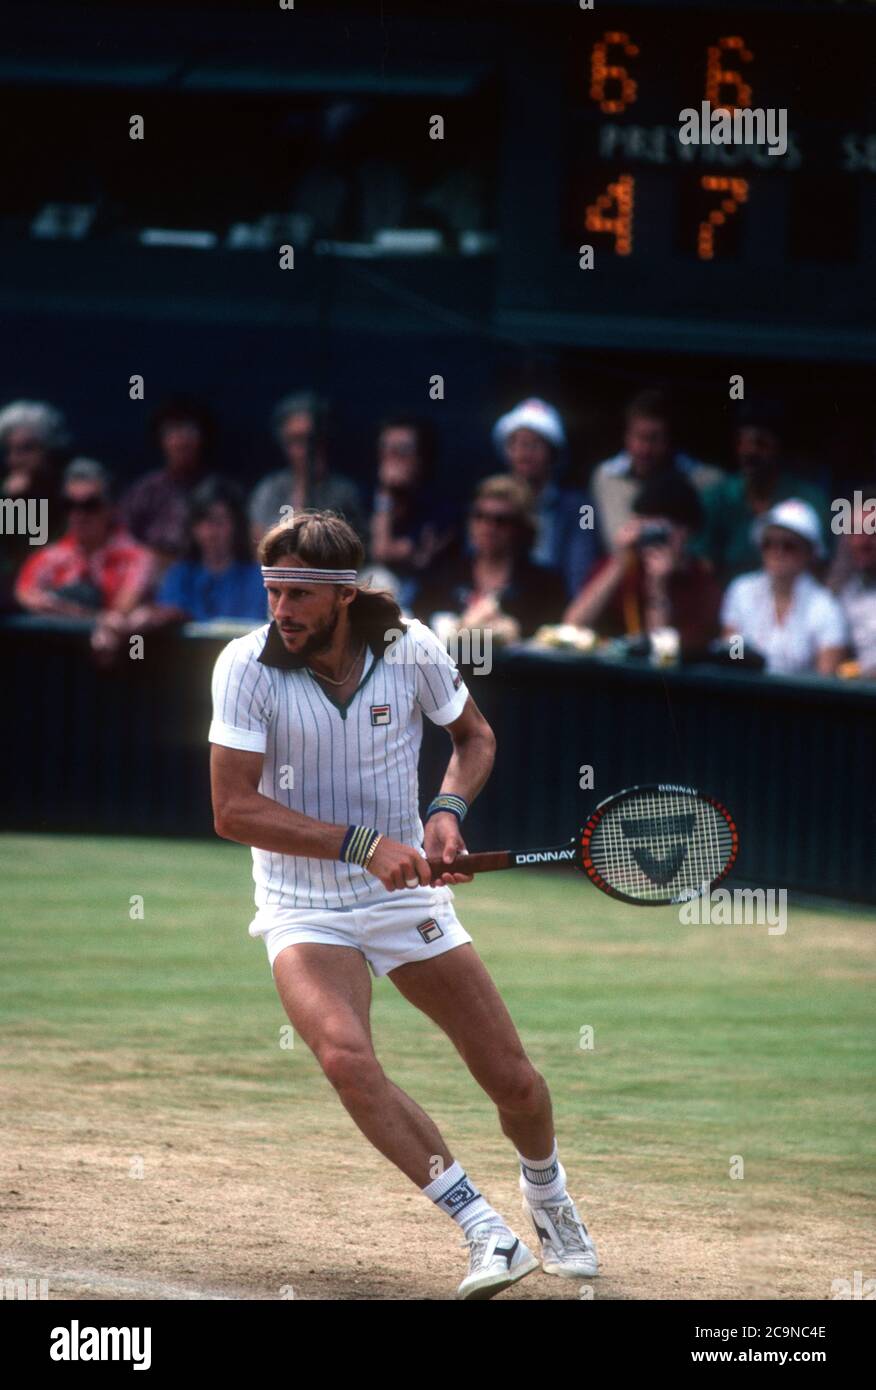 Bjorn Borg nähert sich einer Rückhand während eines Spiels auf Center Coyrt in Wimbledon in 1981. Stockfoto